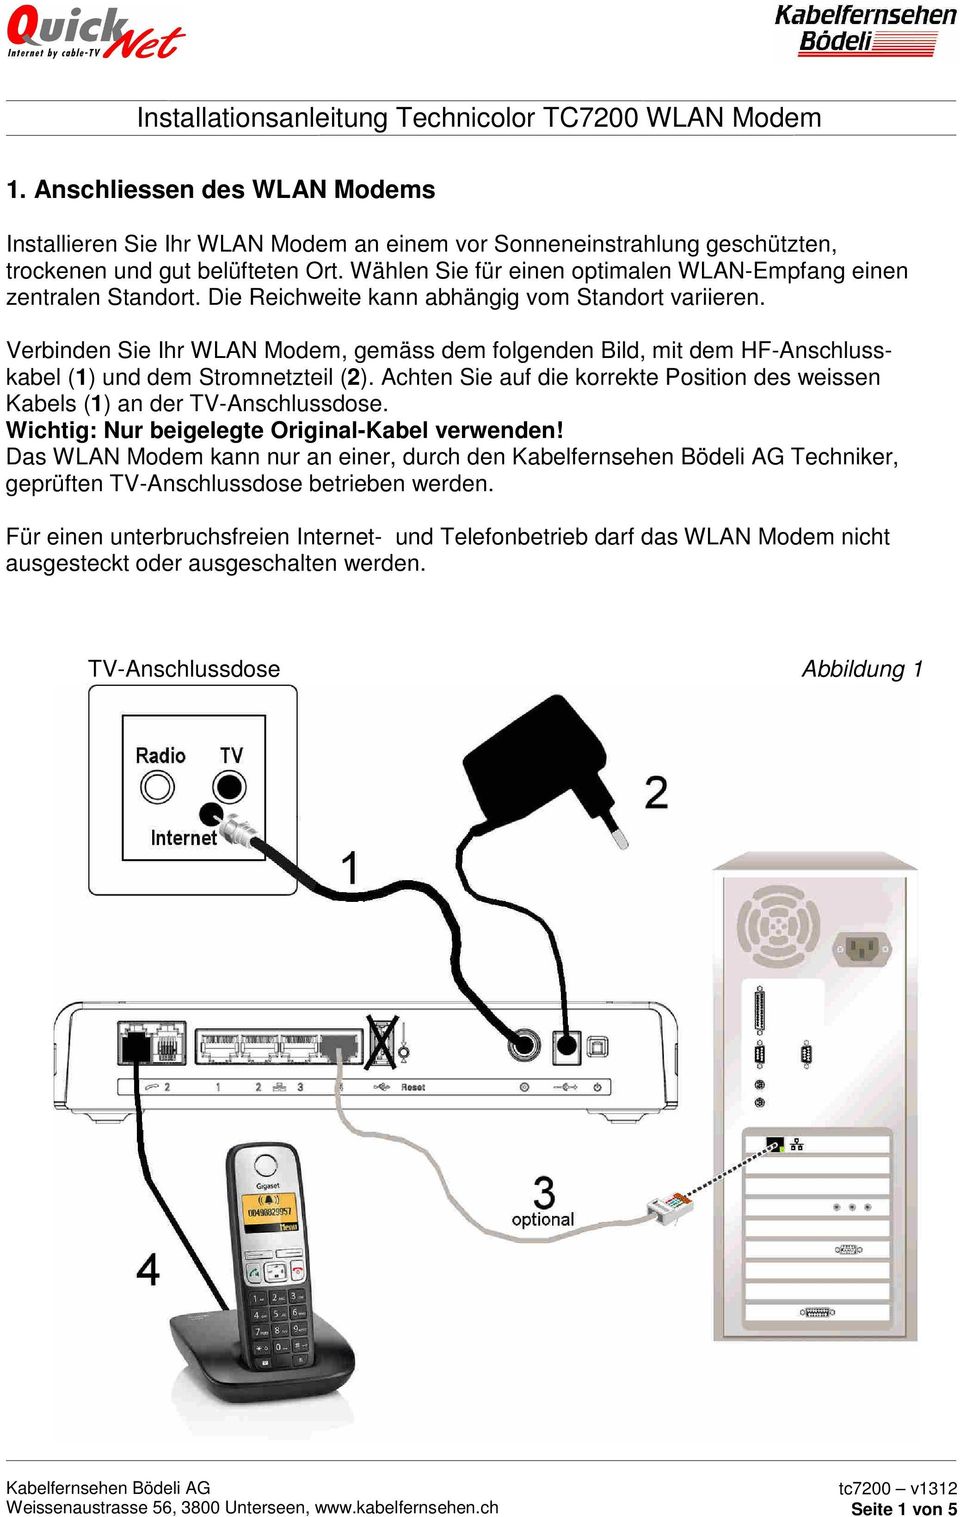 Verbinden Sie Ihr WLAN Modem, gemäss dem folgenden Bild, mit dem HF-Anschlusskabel (1) und dem Stromnetzteil (2).